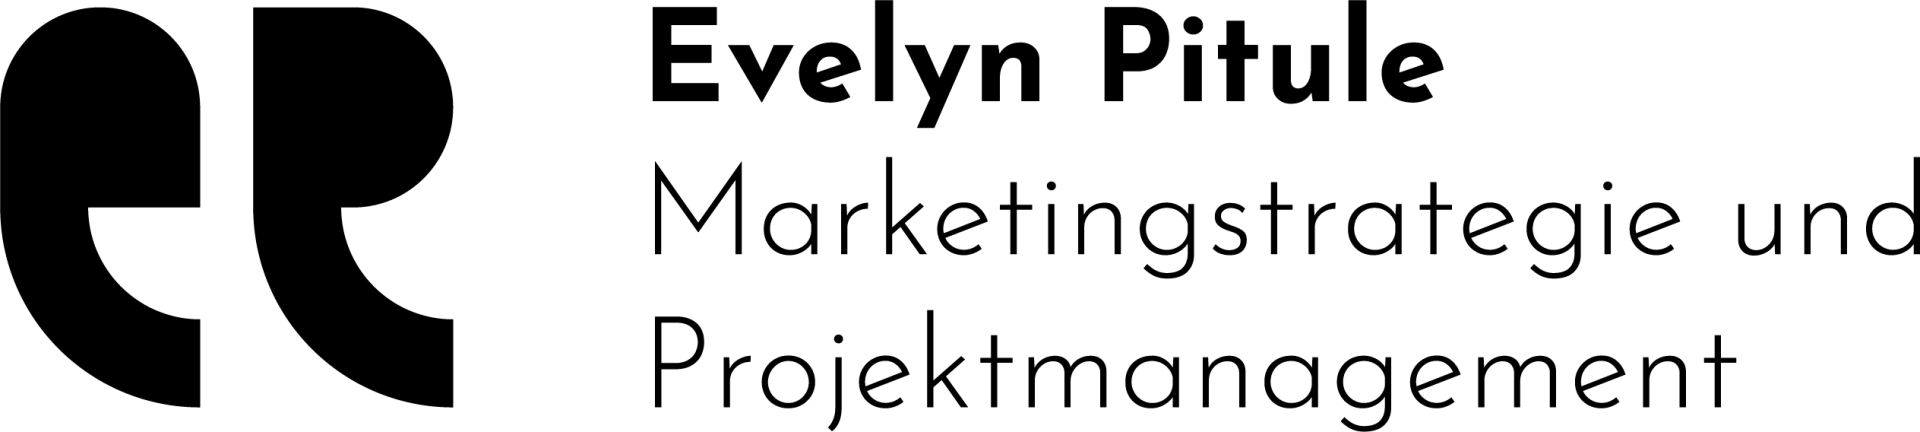 Evelyn Pitule Marketingstrategie & Projektmanagement Stuttgart Freelancer